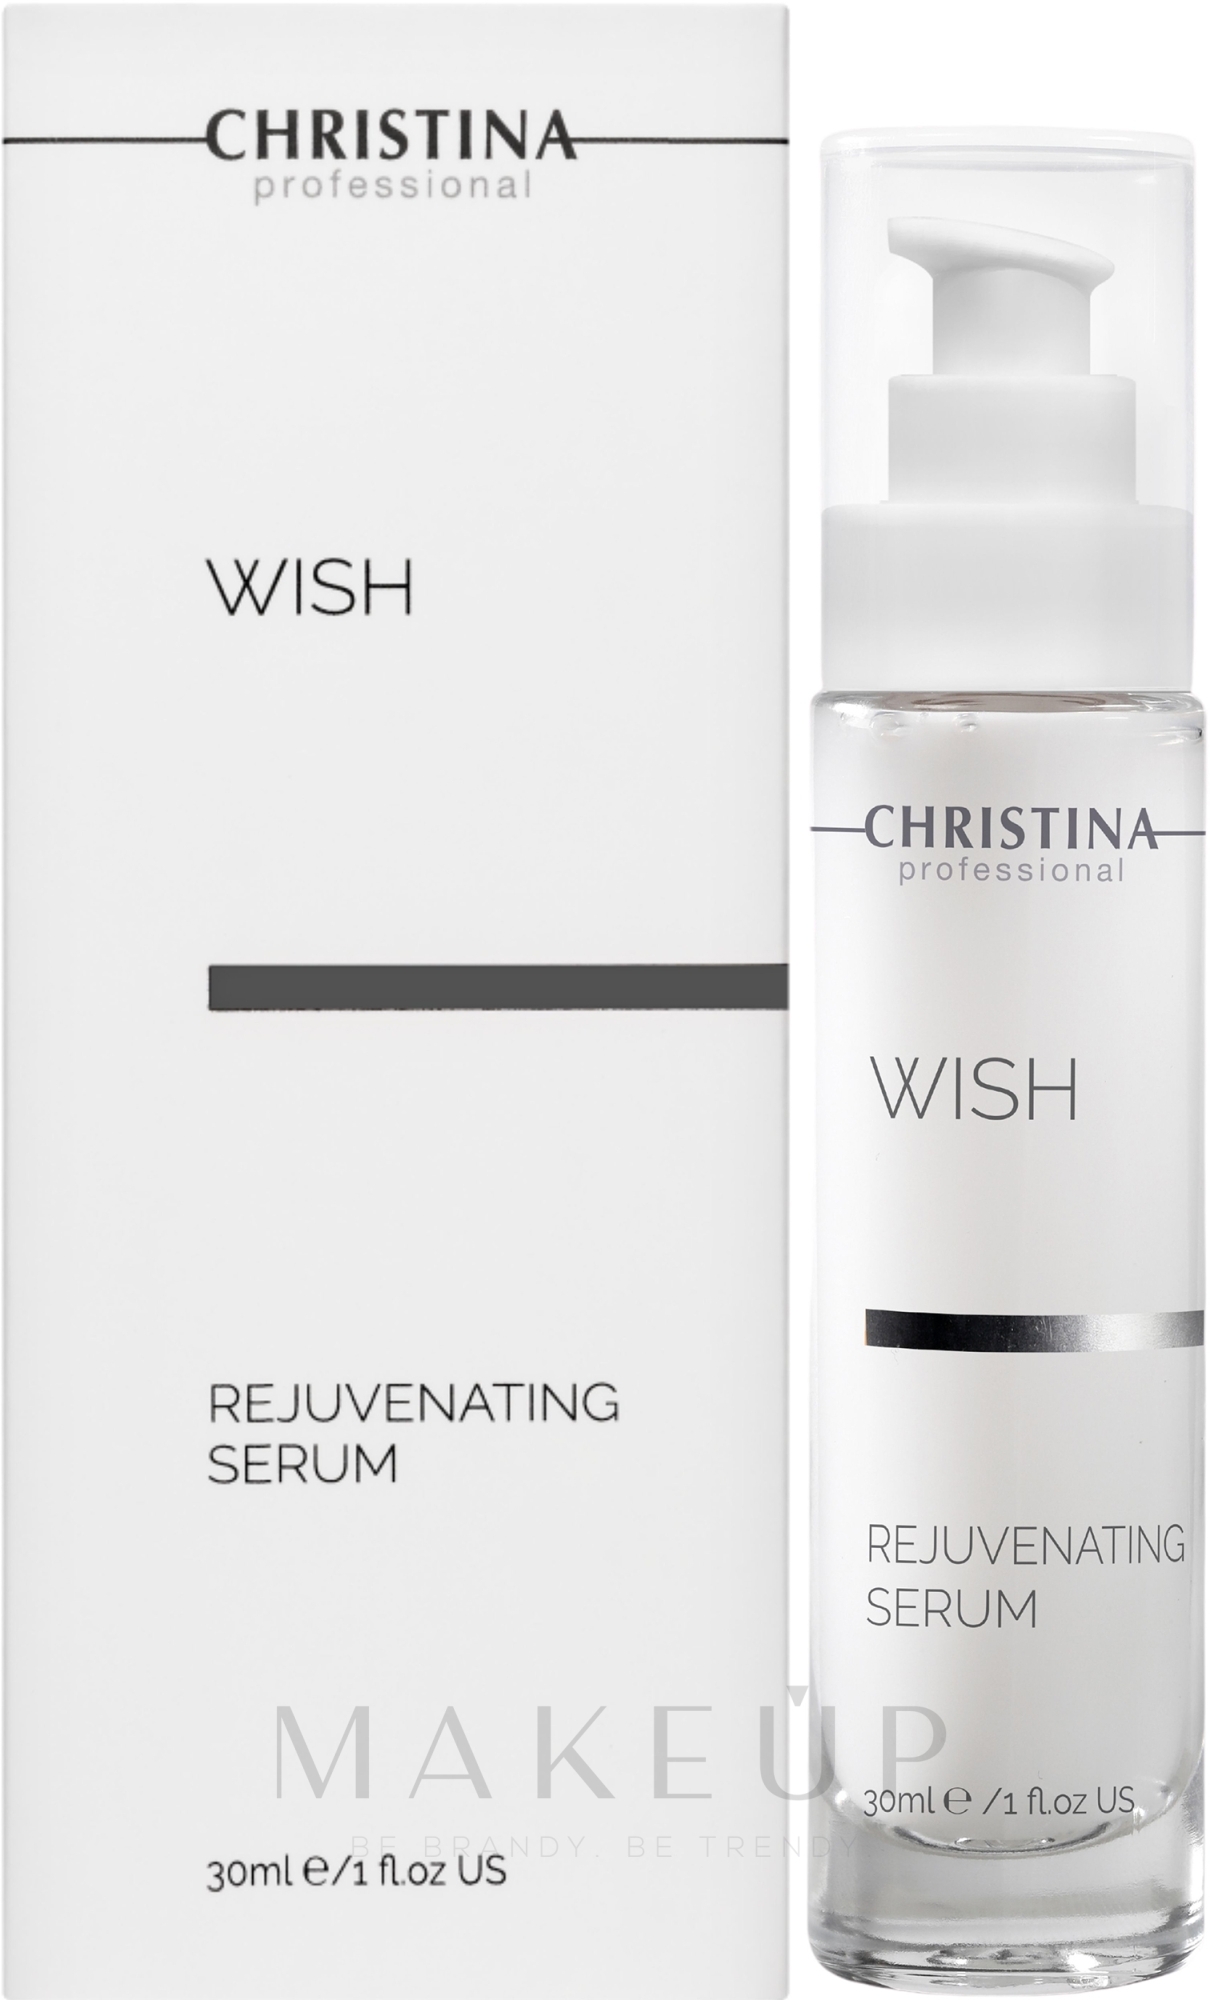 Verjüngendes Gesichtsserum - Christina Wish Rejuvenating Serum — Foto 30 ml